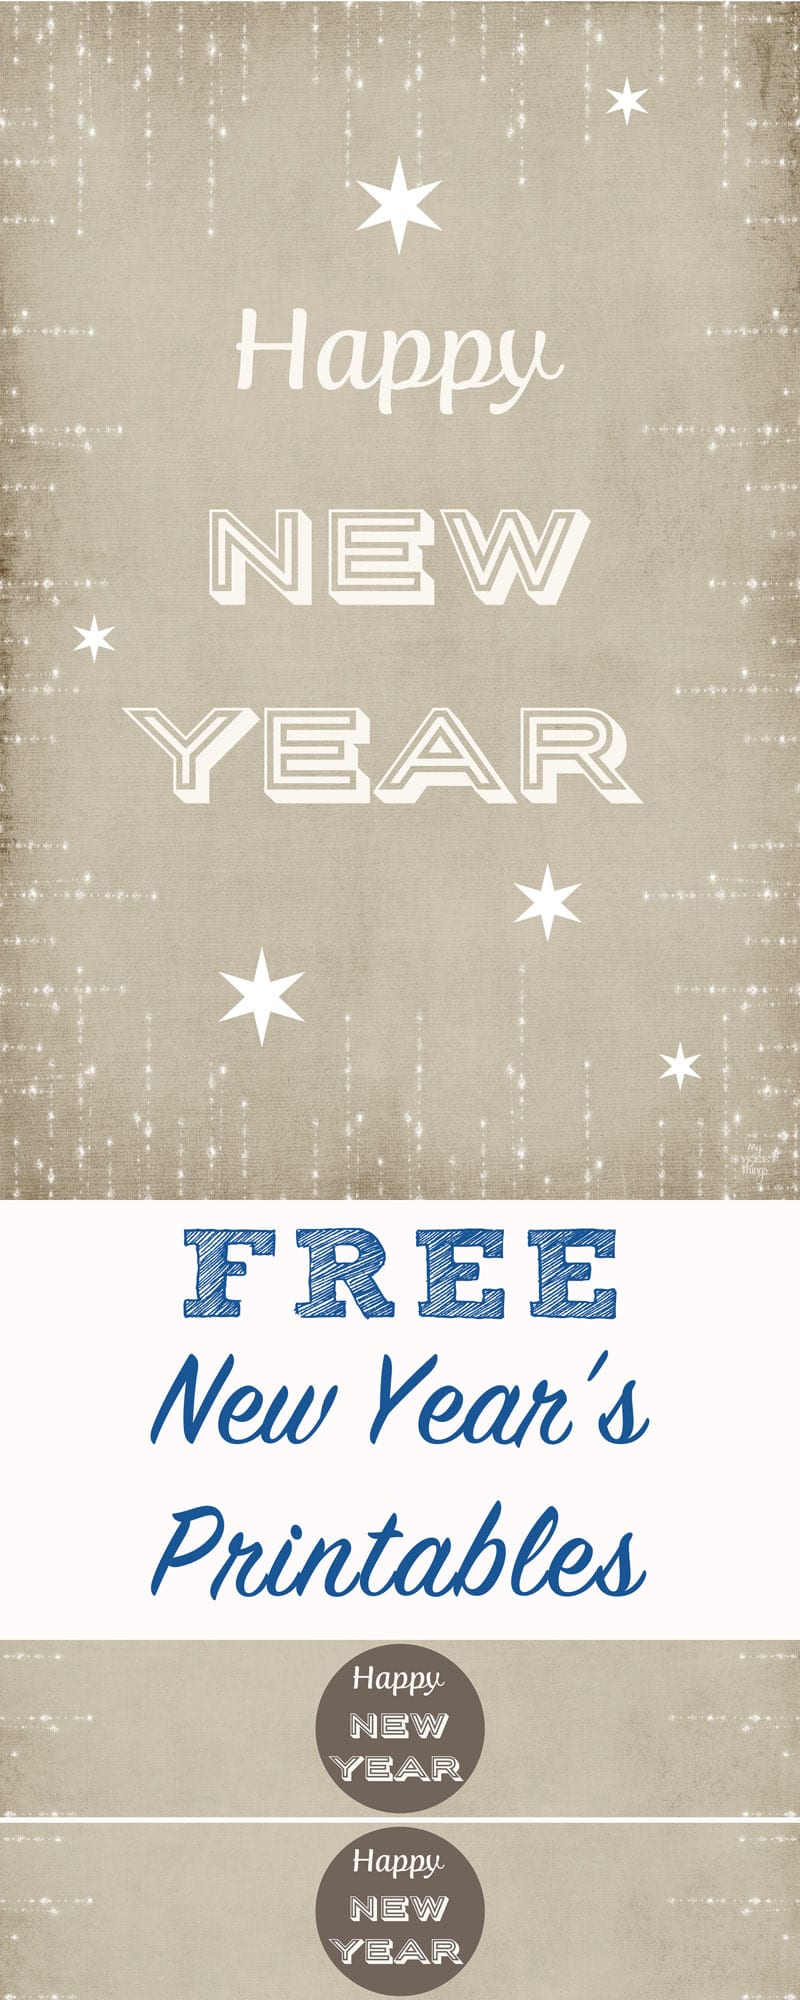 Imprimible gratis Año Nuevo 2016 | Descarga gratuita y listo para imprimir, añadiendo un toque decorativo a la fiesta | Via www.sweethings.net